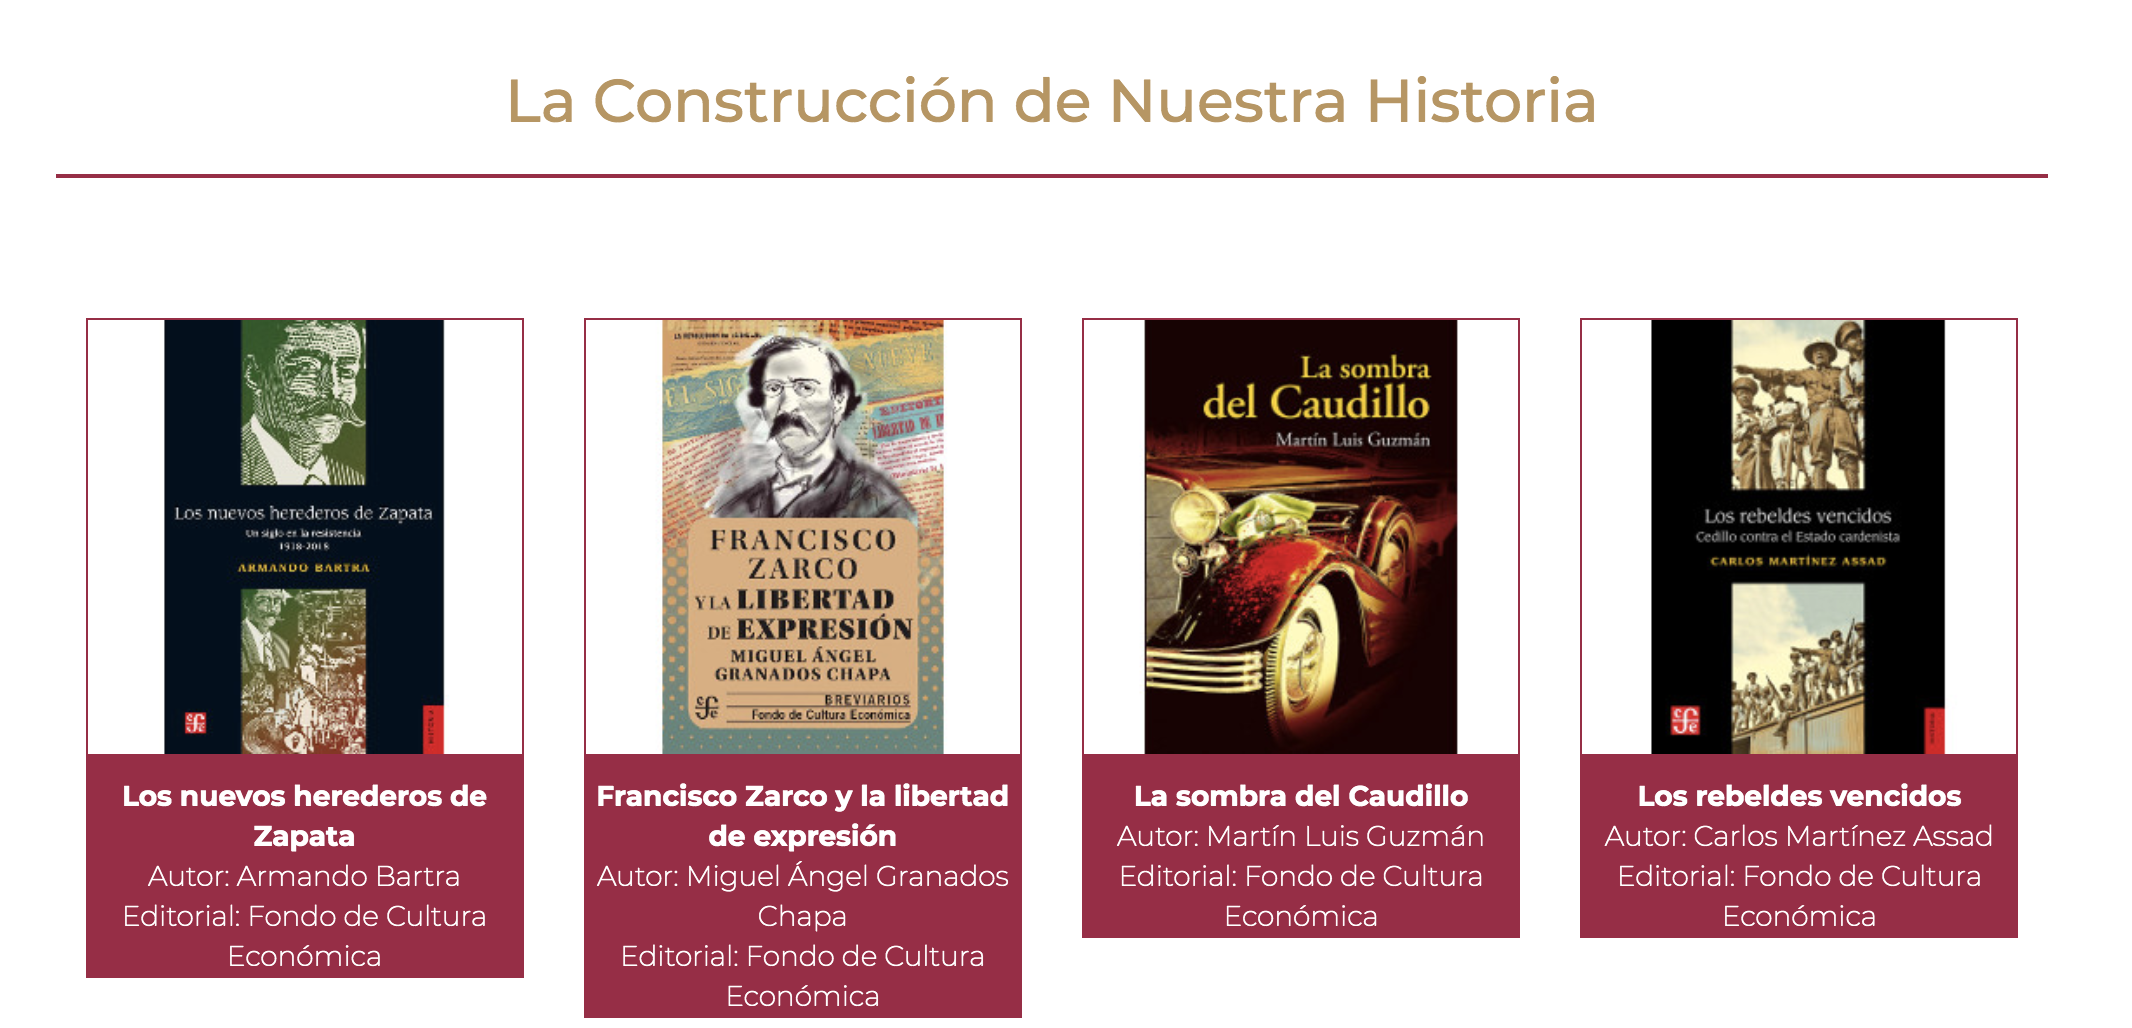 Boletín No. 132 Podrán maestras y maestros compartir colección La Construcción de Nuestra Historia con sus alumnos: SEP